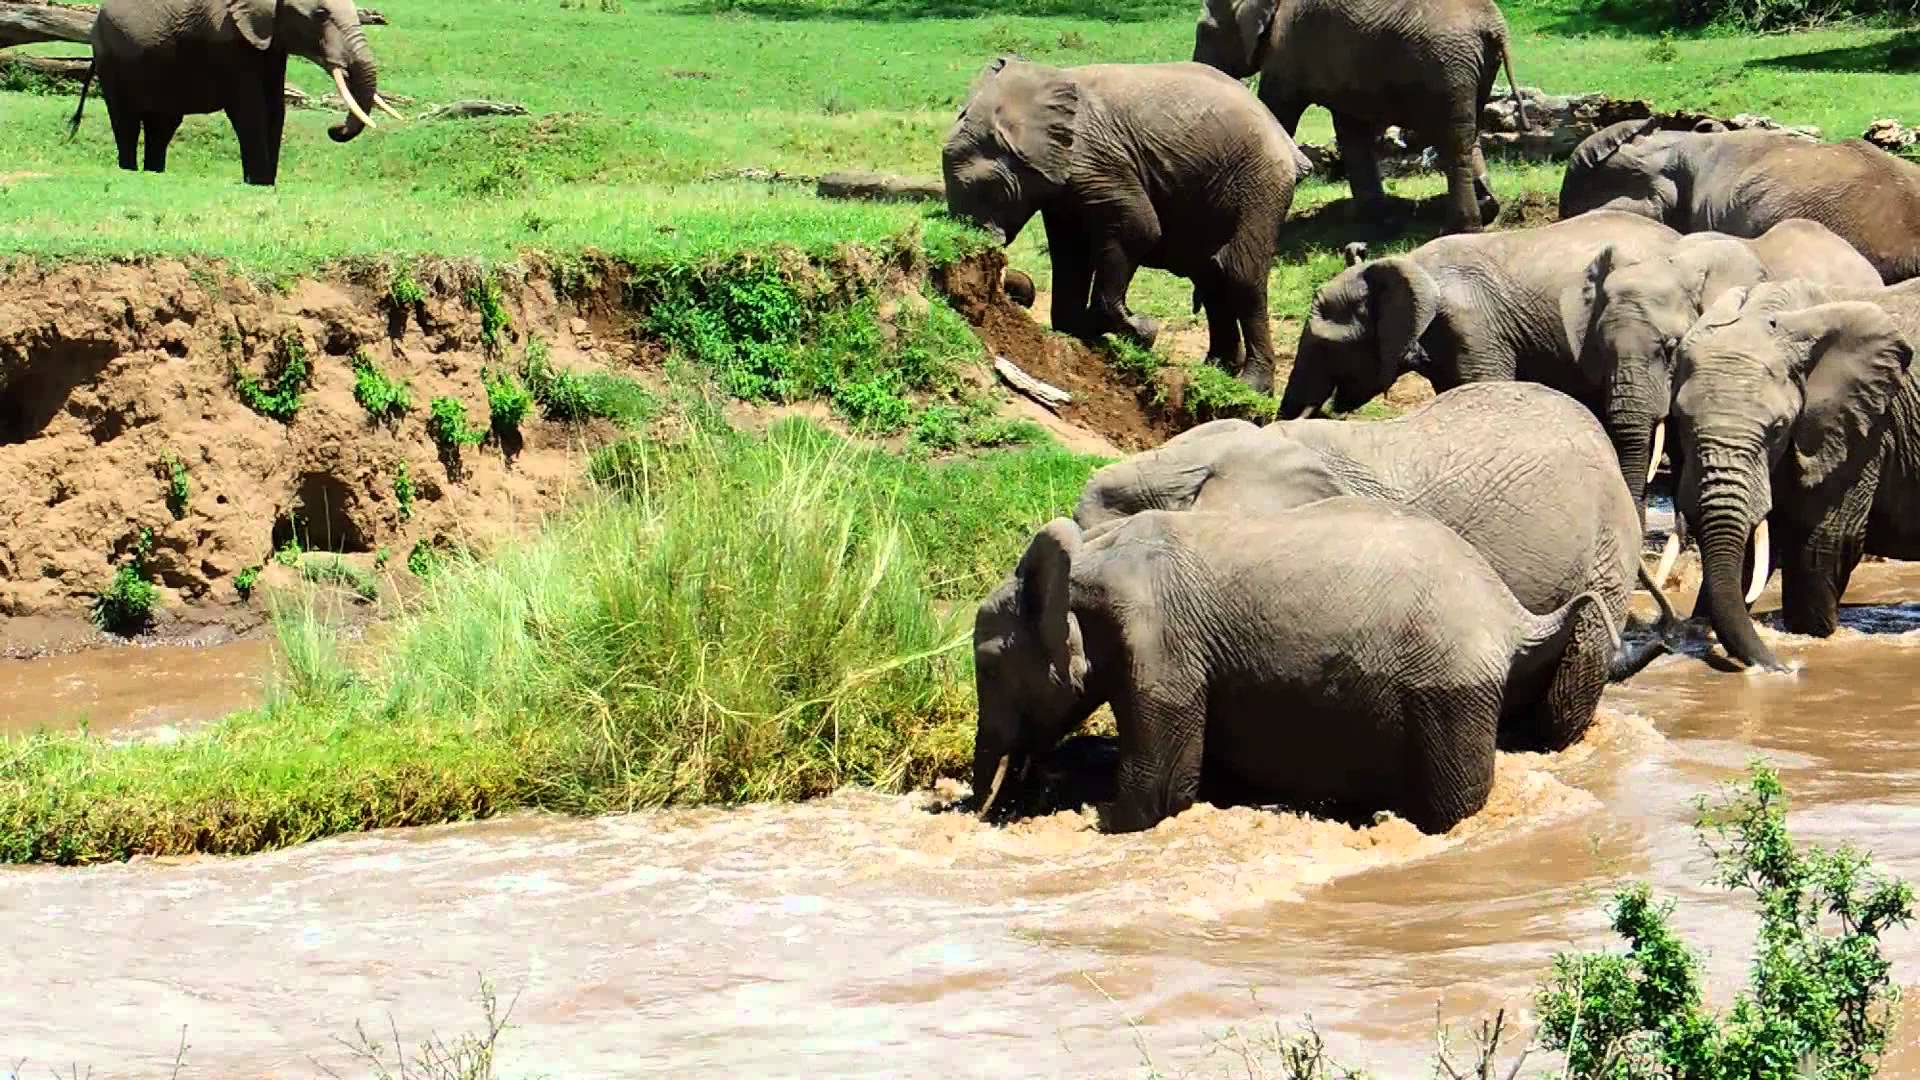 VIDEO: O Resgate Impressionante De Um Filhote De Elefante Levado Pela Corrente Do Rio